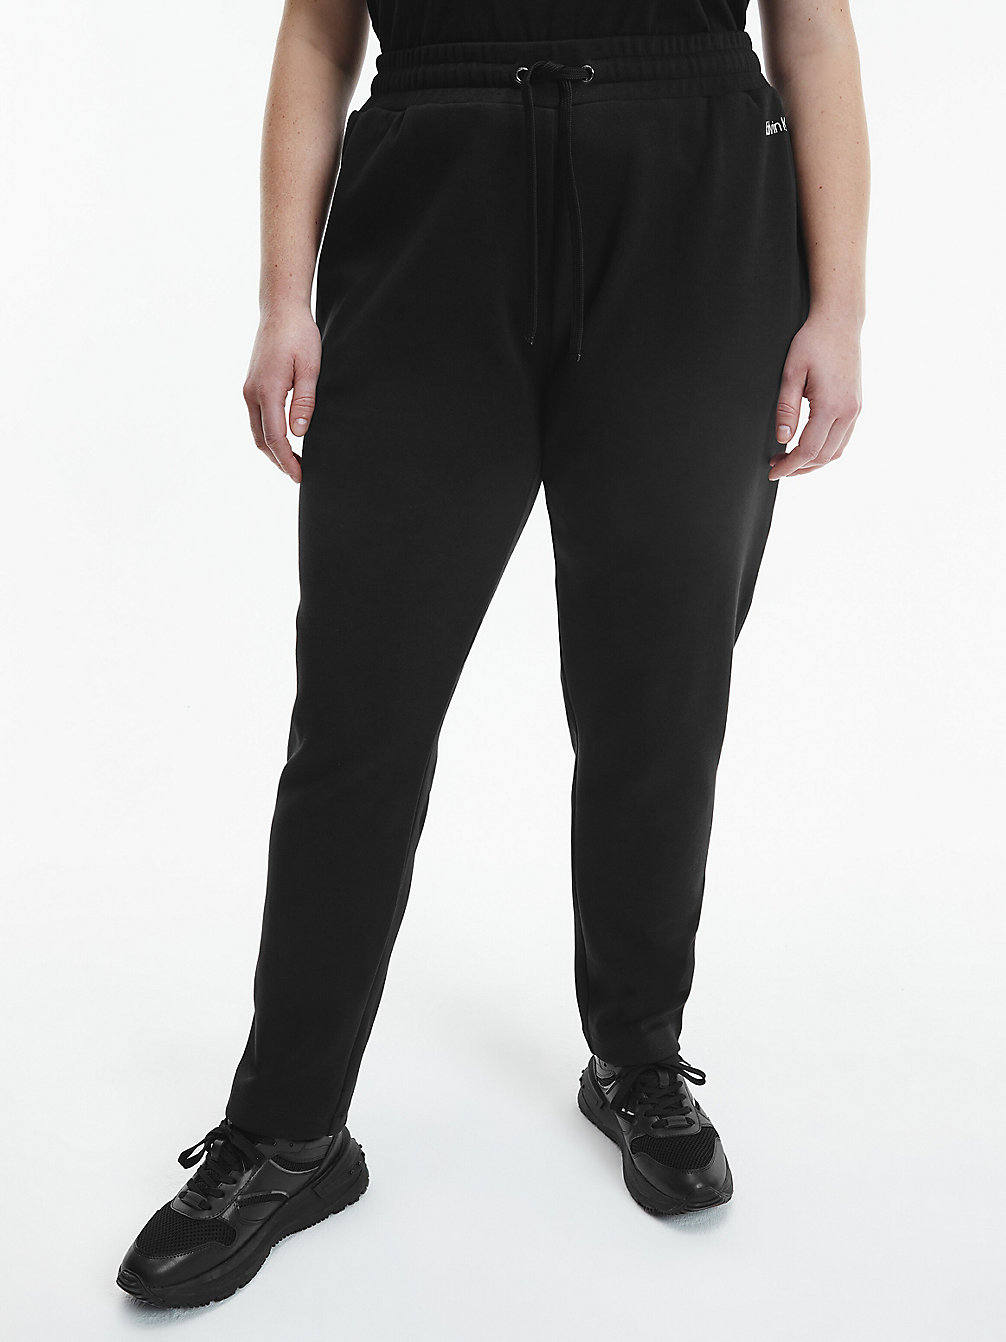 CK BLACK > Spodnie Dresowe Plus Size > undefined Kobiety - Calvin Klein